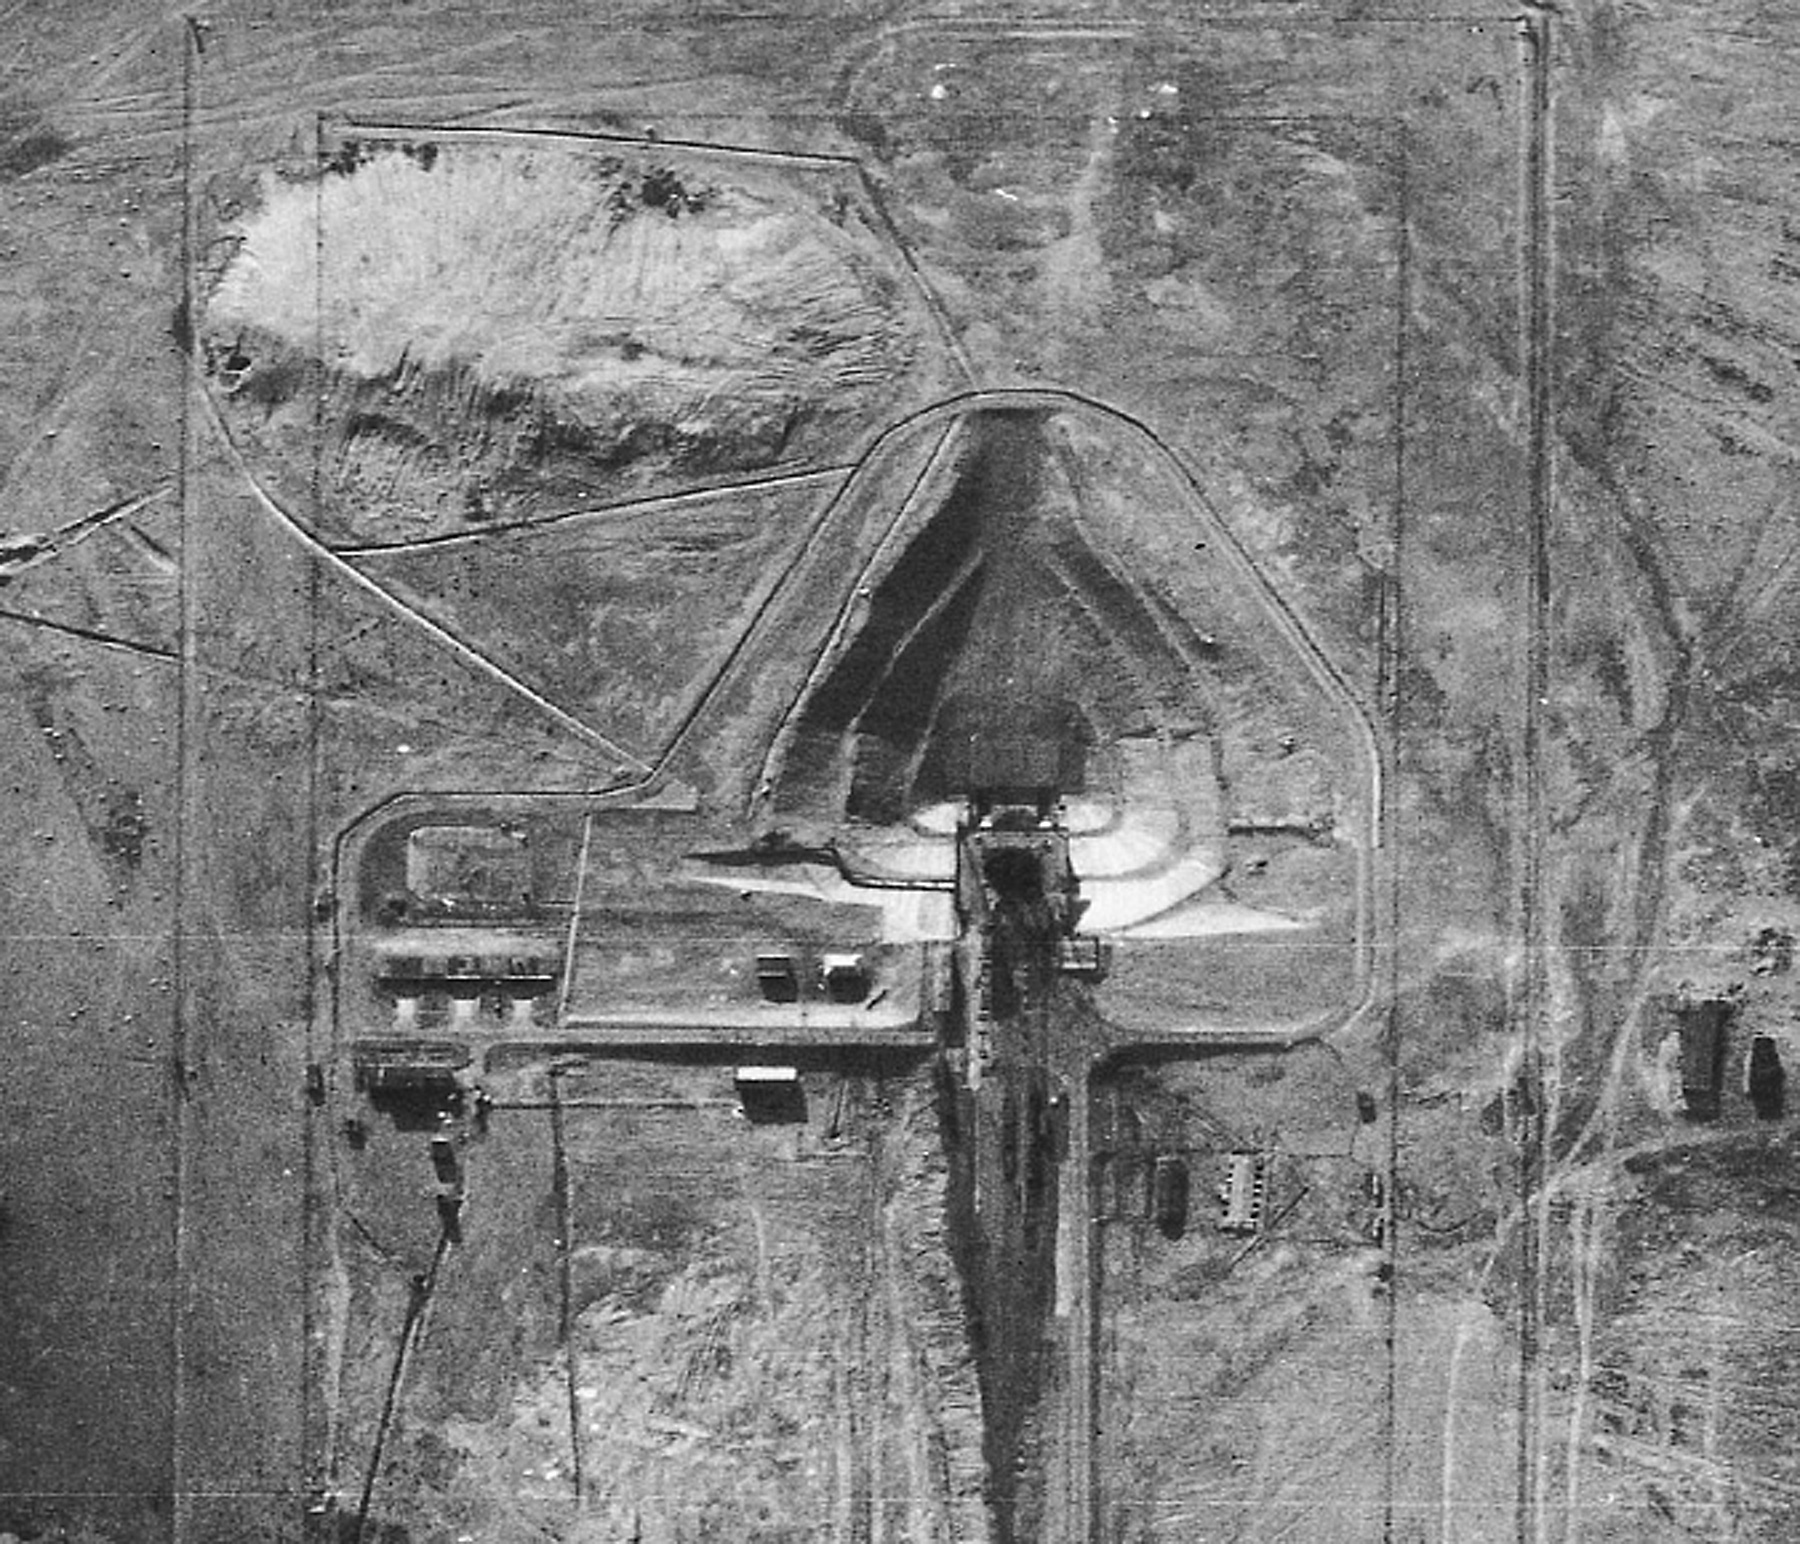 Снимок из самолета У-2 28 августа 1957 г. зафиксировал взлетную площадку в Тюратаме. Это была первая четкая фотография этого критически важного комплекса